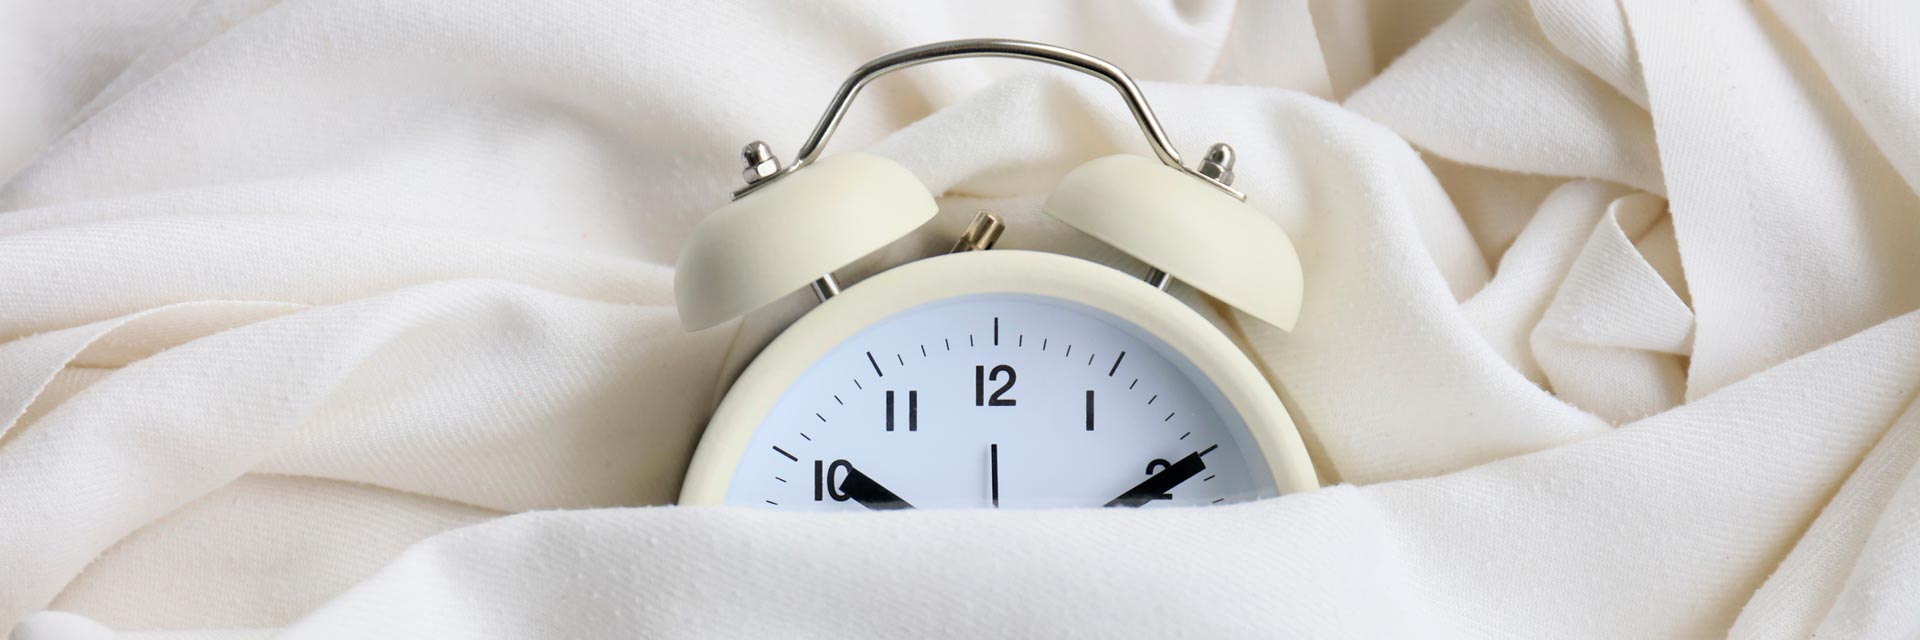 El descanso adecuado forma parte de una vida saludable, si te cuesta conciliar el sueño puedes probar estos sencillos trucos para dormir.